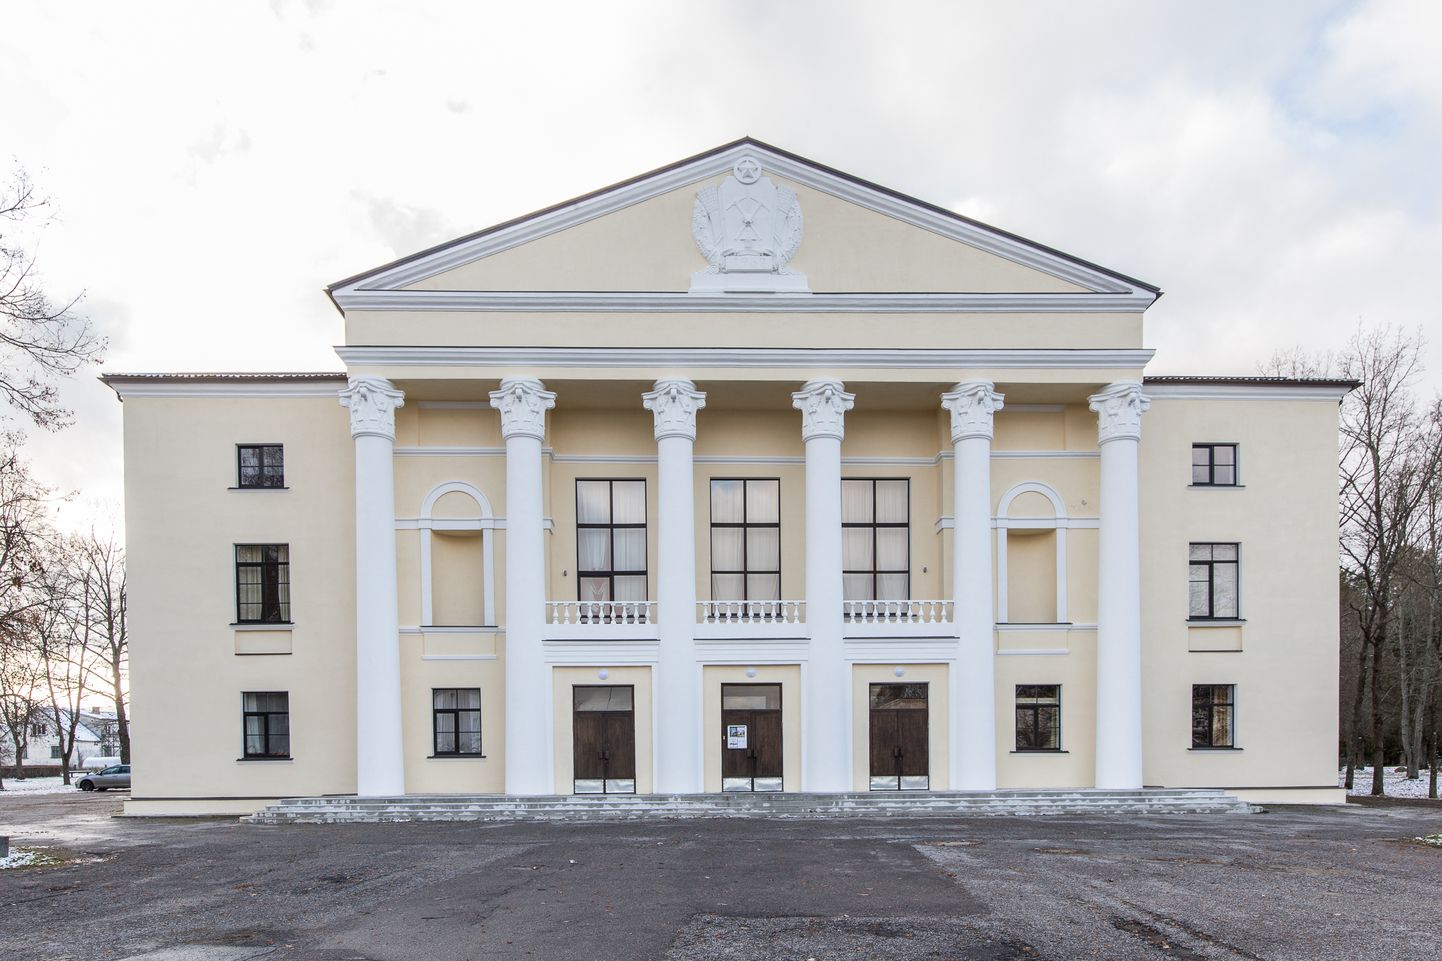 Руководители Тойлаской волости и жители Кохтла-Нымме не могут договориться о судьбе Кохтла-Ныммеского народного дома.